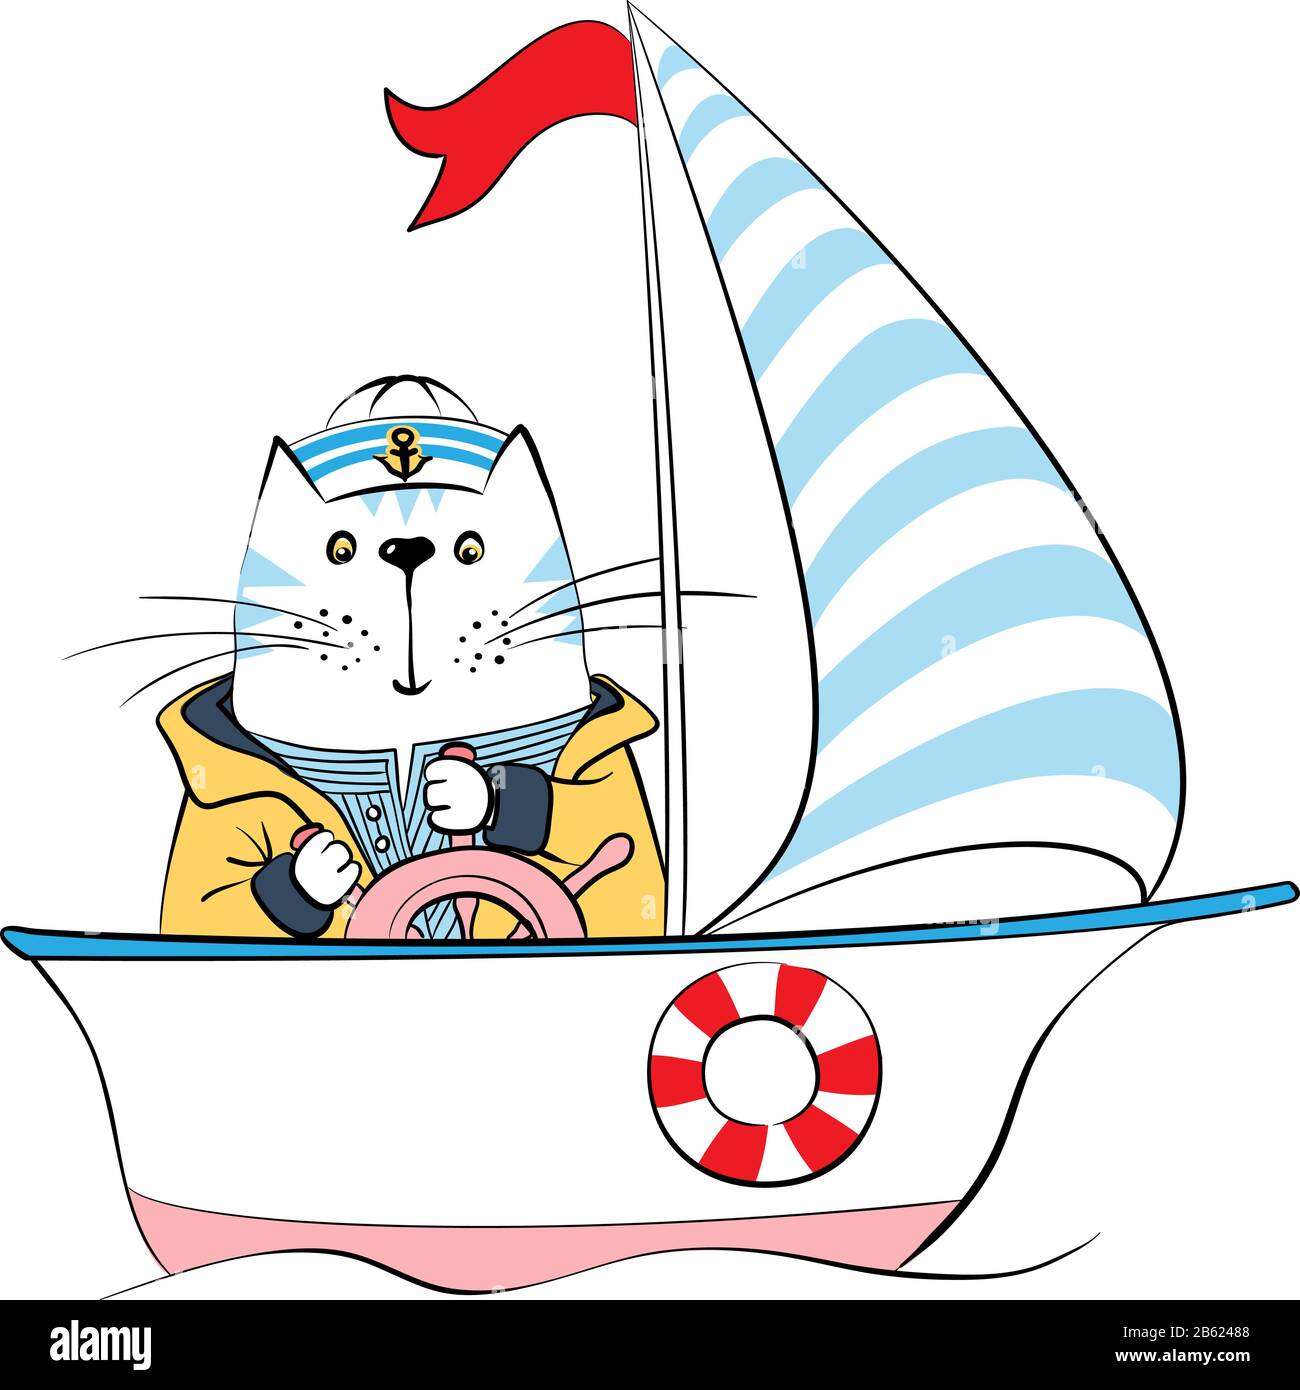 Lindo capitán de gato en traje de marinero al timón del barco, dibujos animados dibujados a mano ilustración vectorial Ilustración del Vector